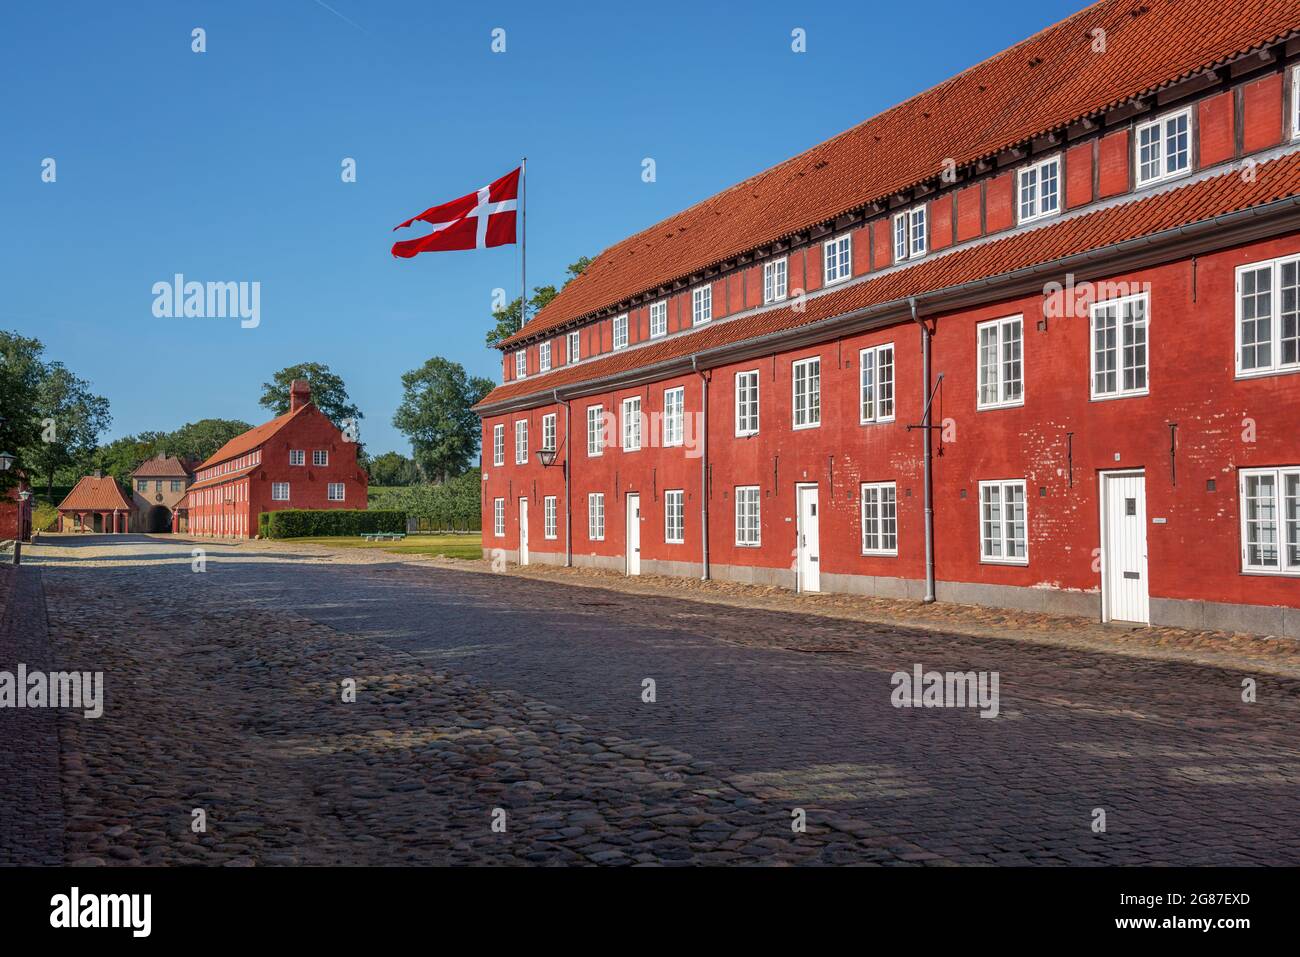 Les bâtiments de la forteresse de Kastellet (la Citadelle) avec le drapeau du Danemark - Copenhague, Danemark Banque D'Images